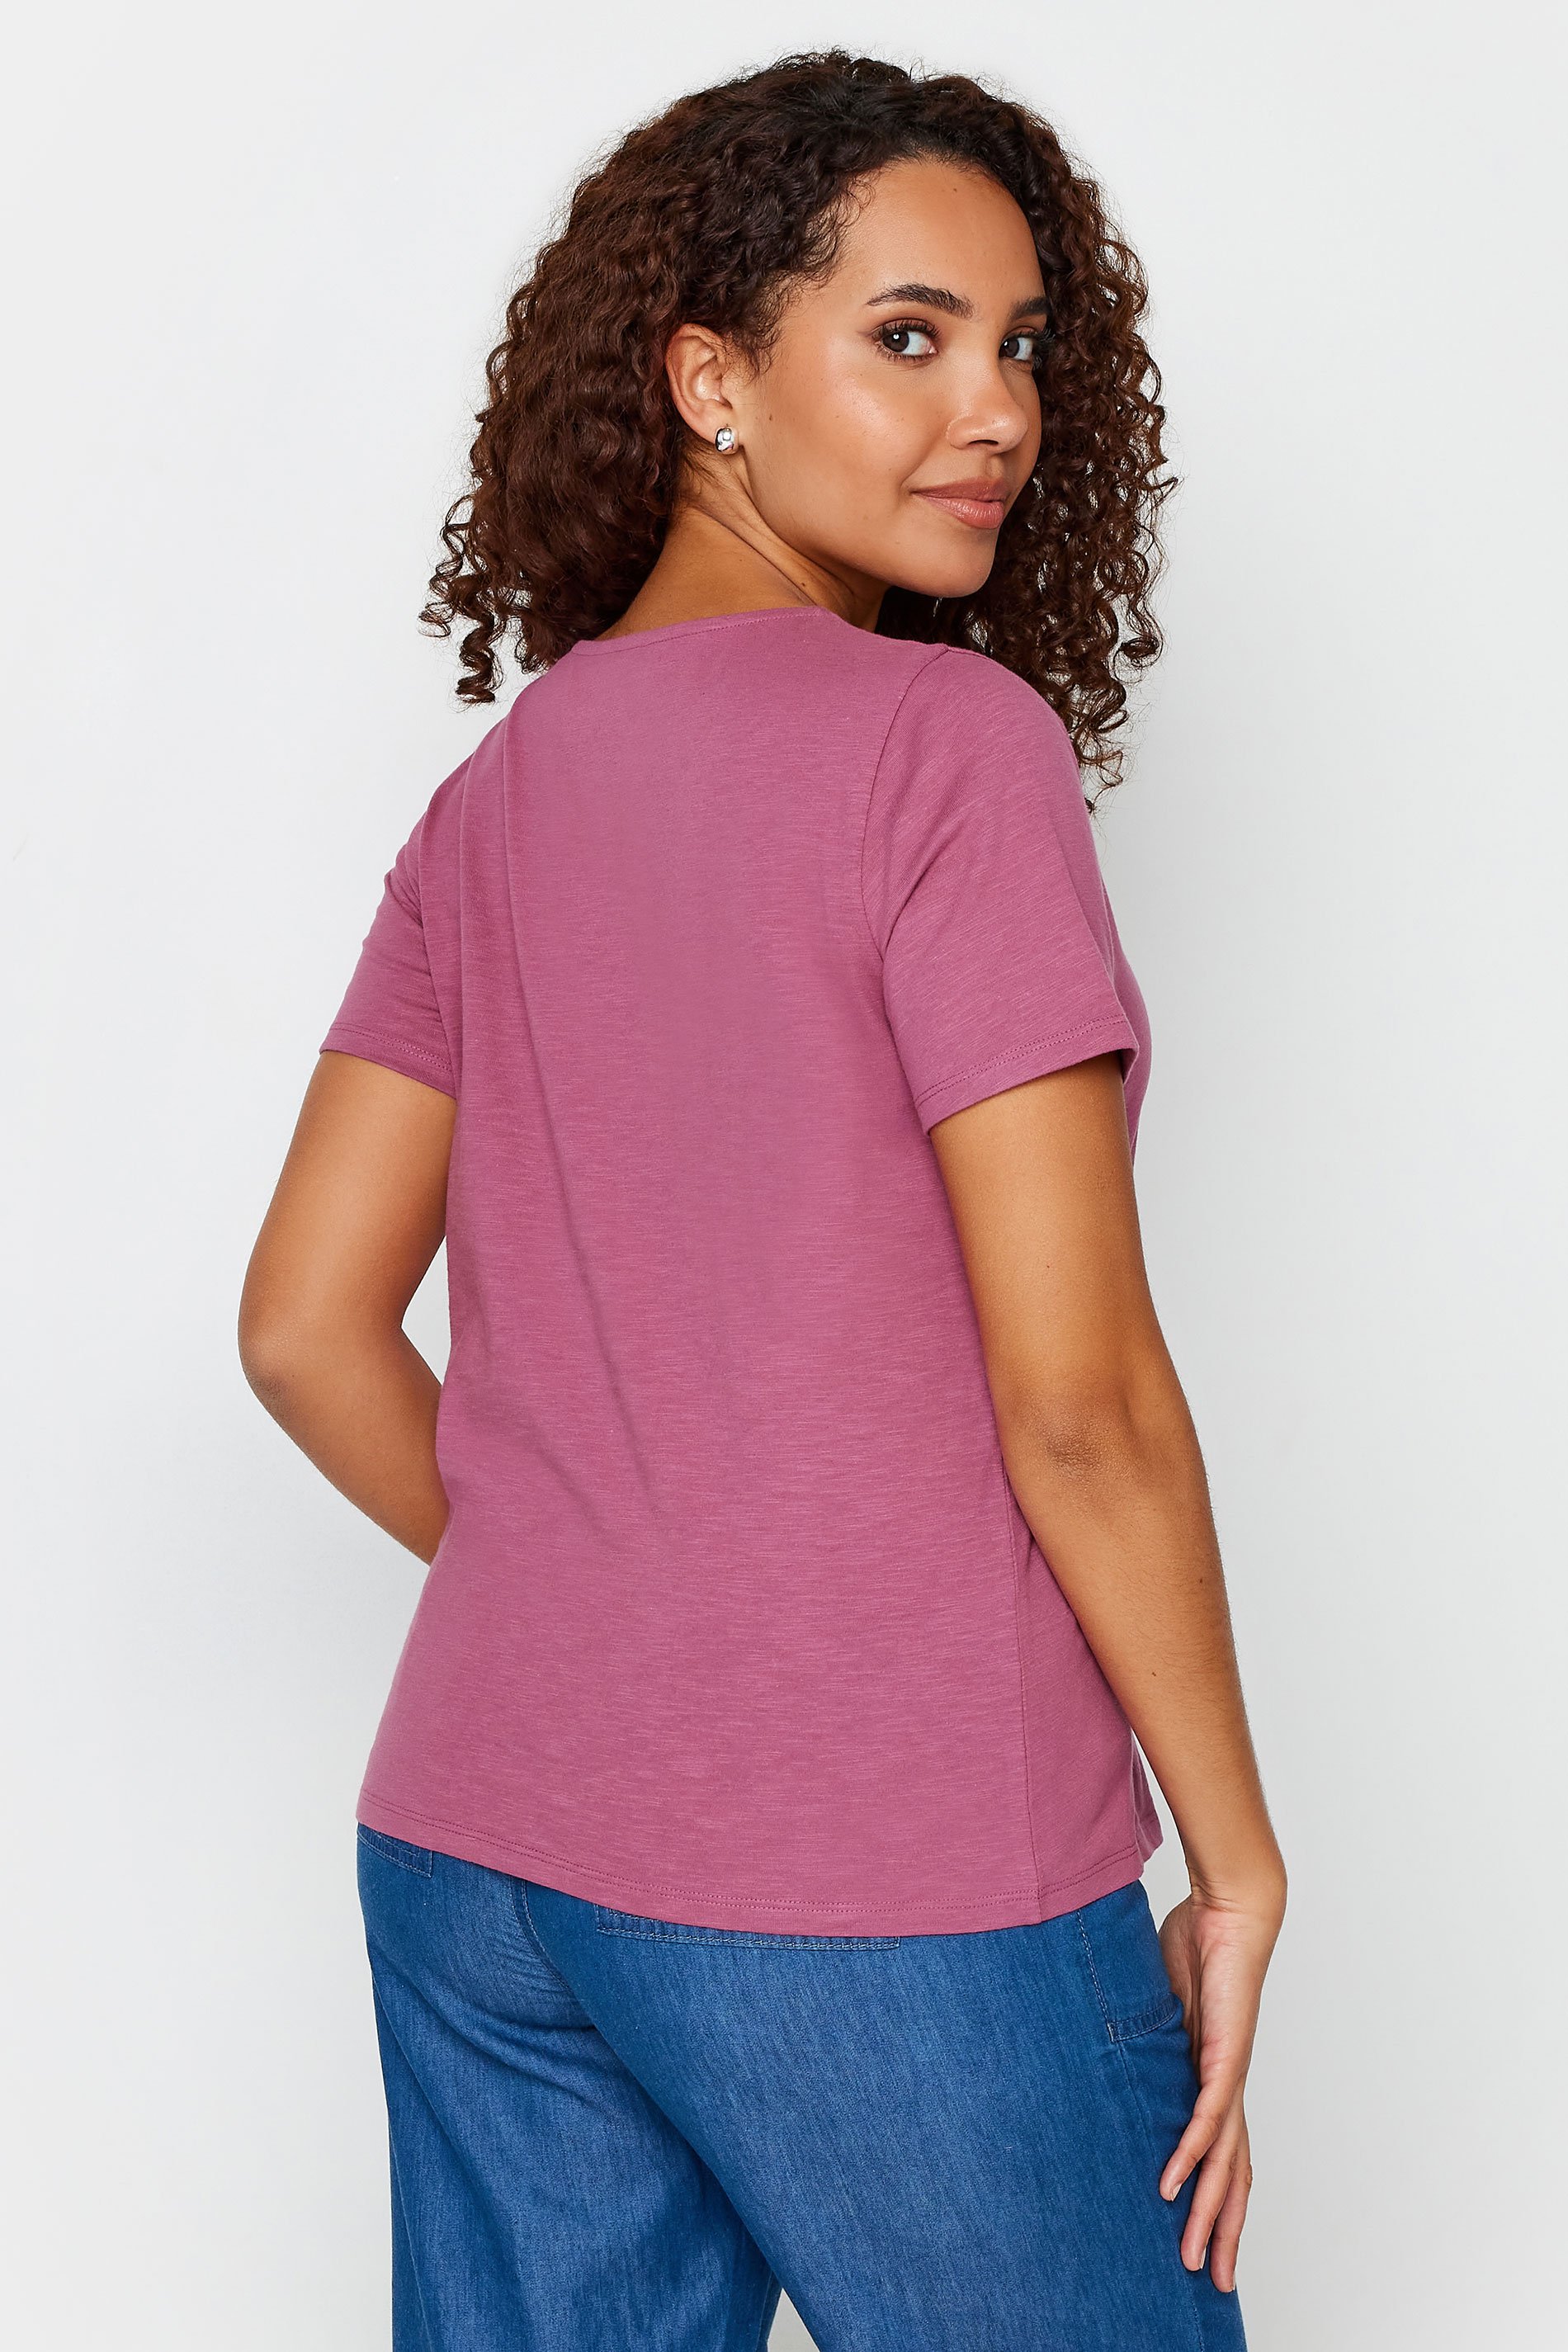 M&Co Pink Notch Neck Cotton T-Shirt | M&Co 3